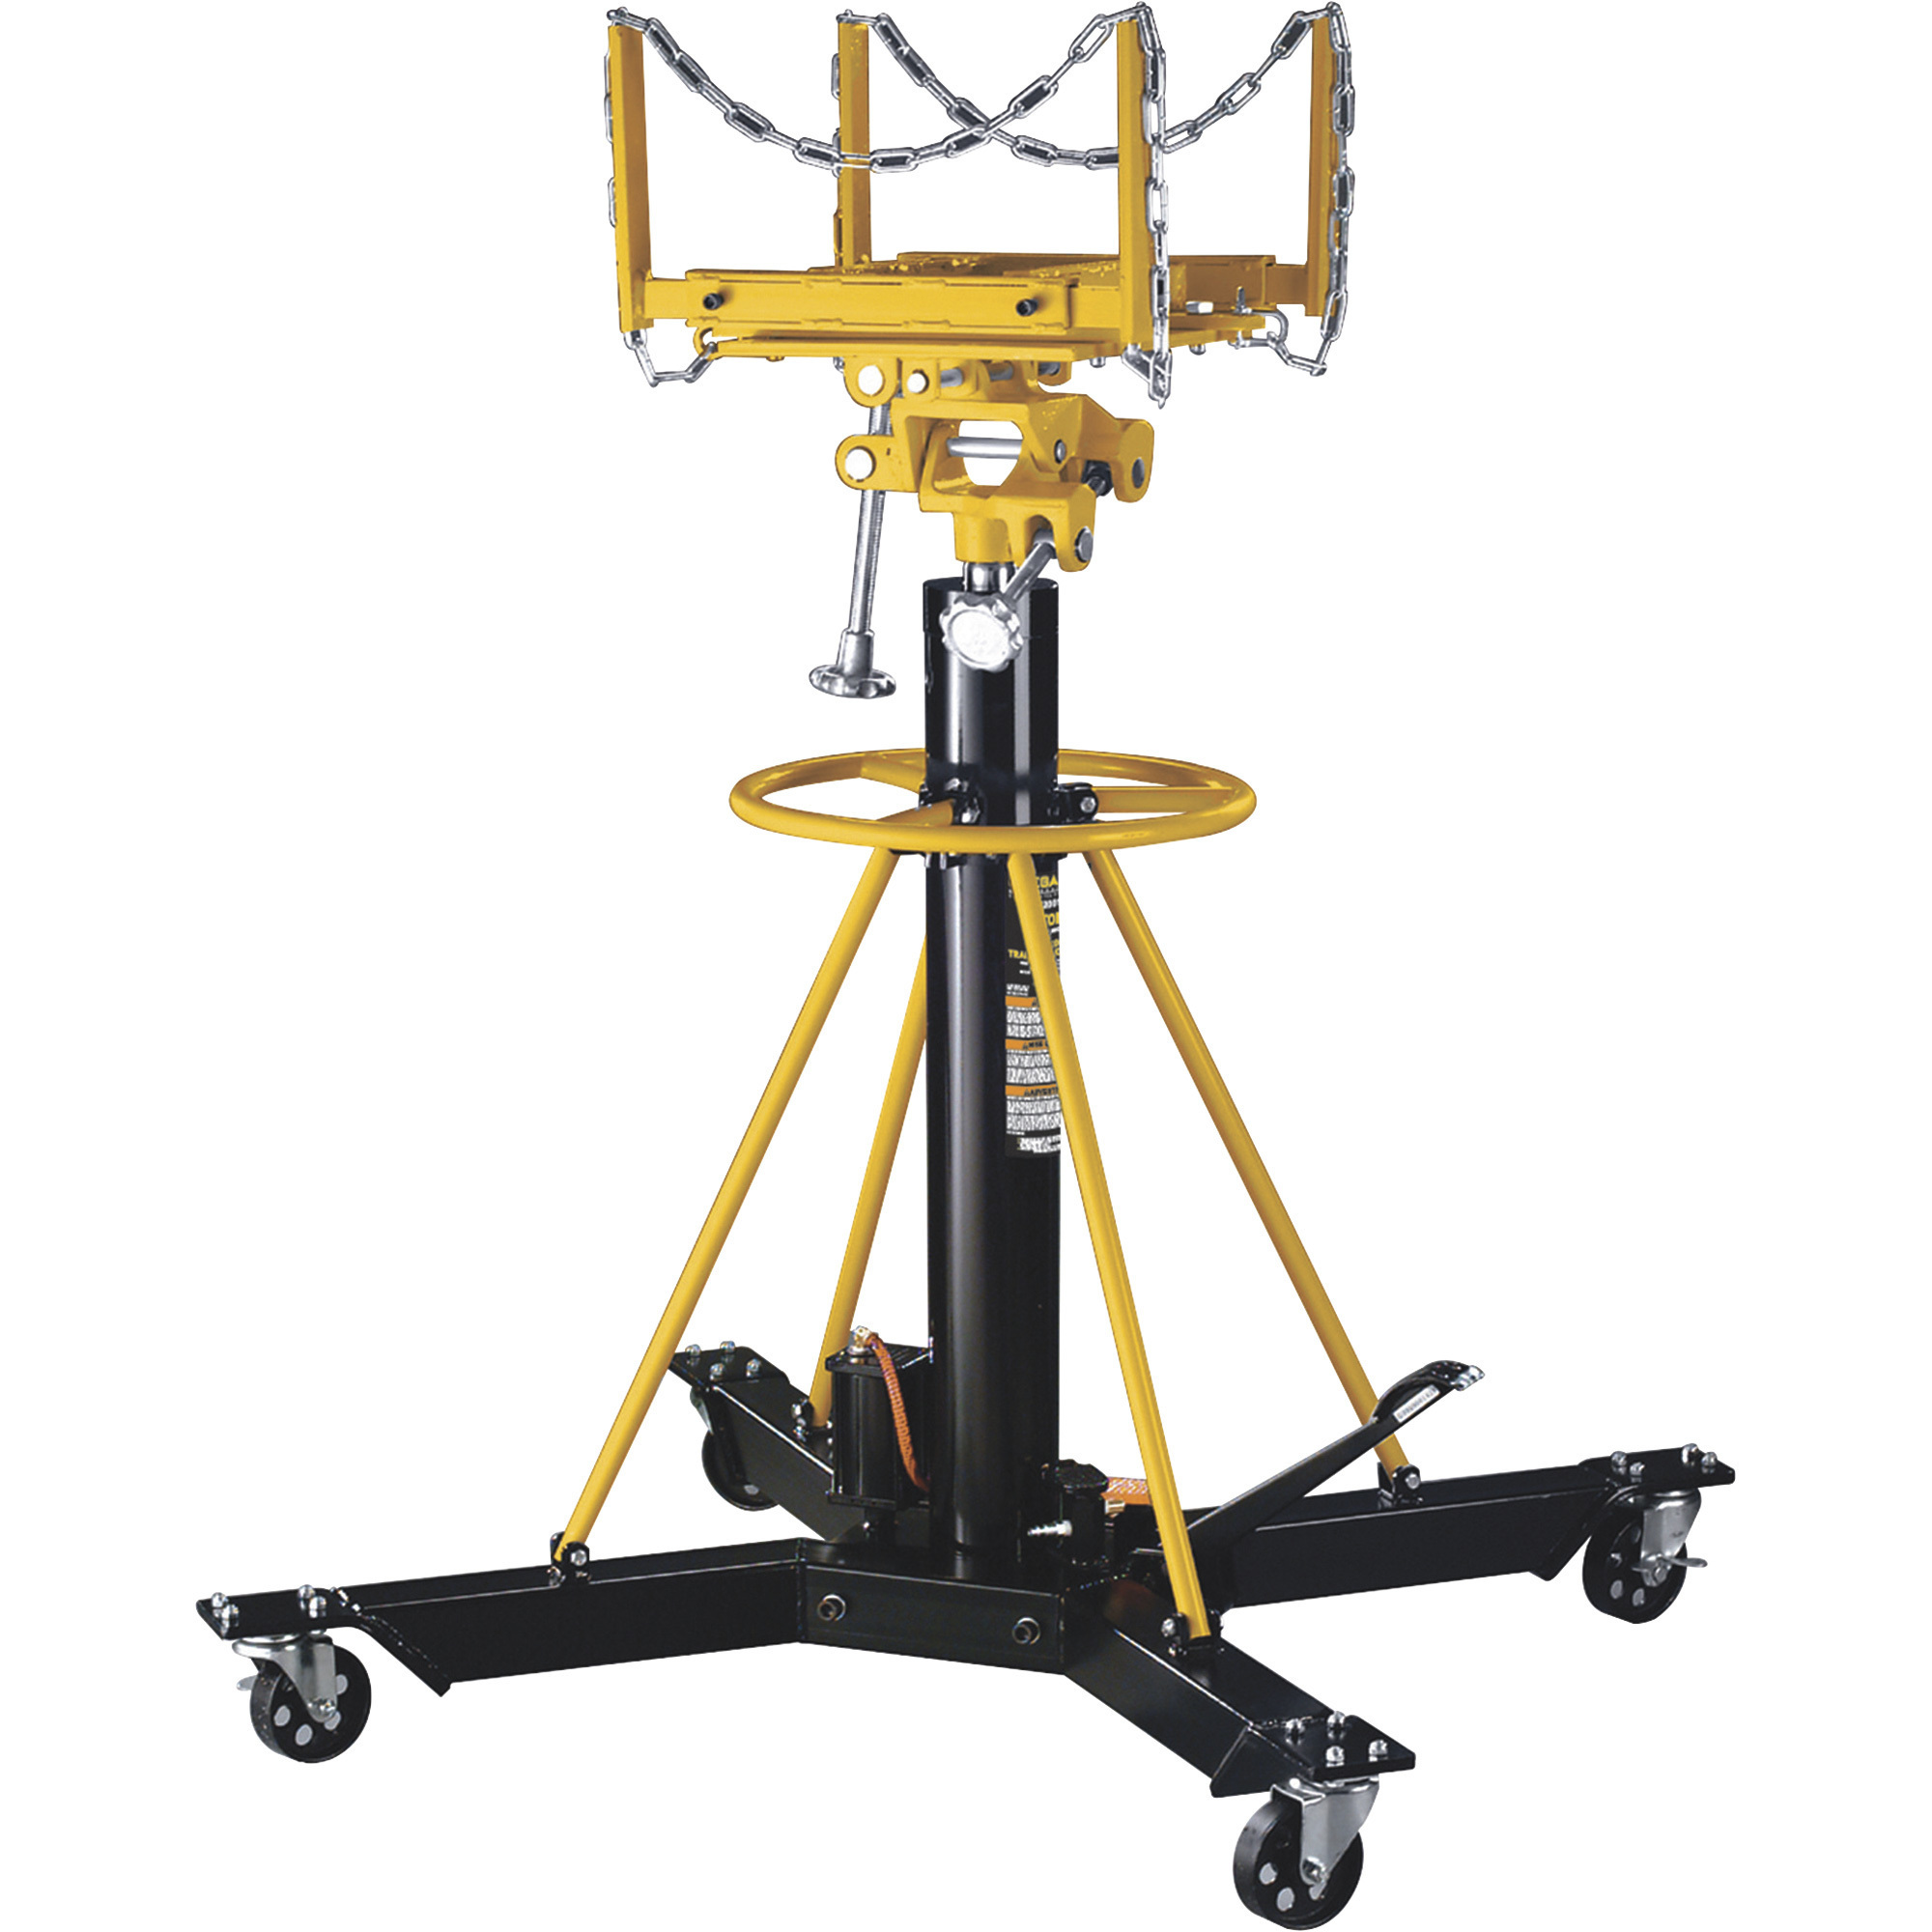 Omega Hydraulic Telescoping Transmission Jack, 1-Ton Capacity, Model 42001